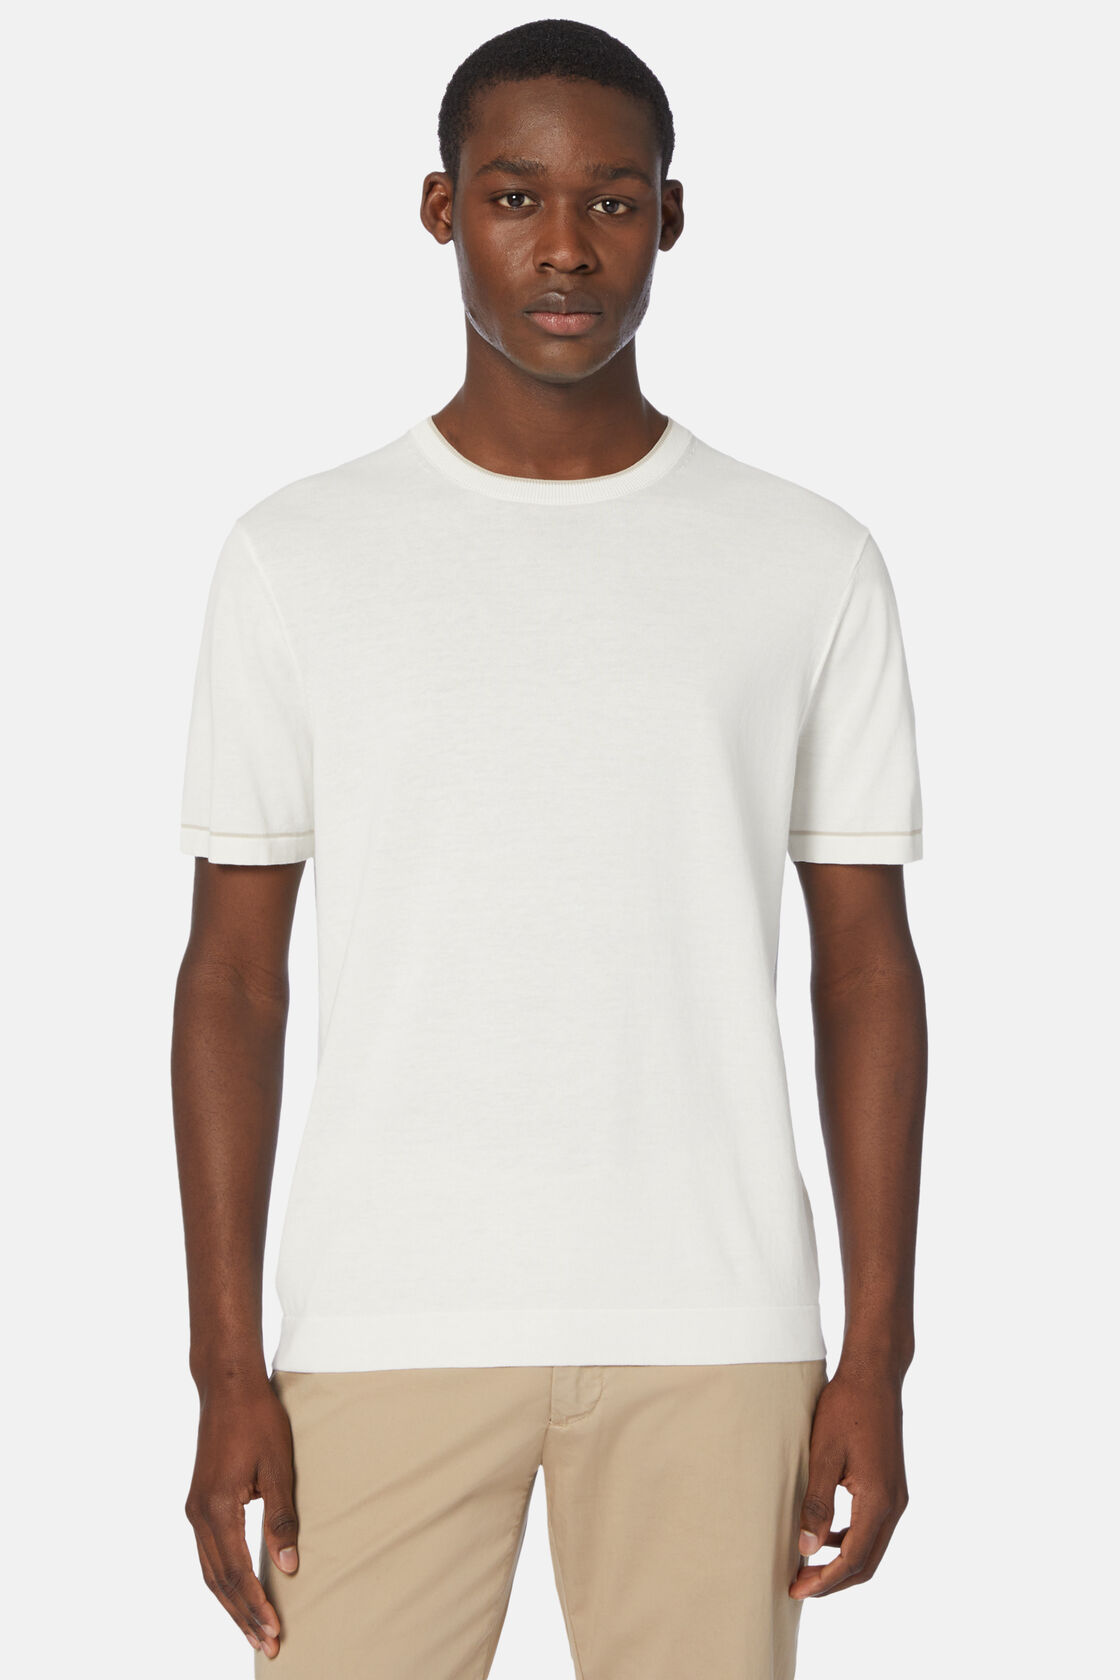 Weißes Strick-T-Shirt Aus Baumwollkrepp, Weiß, hi-res